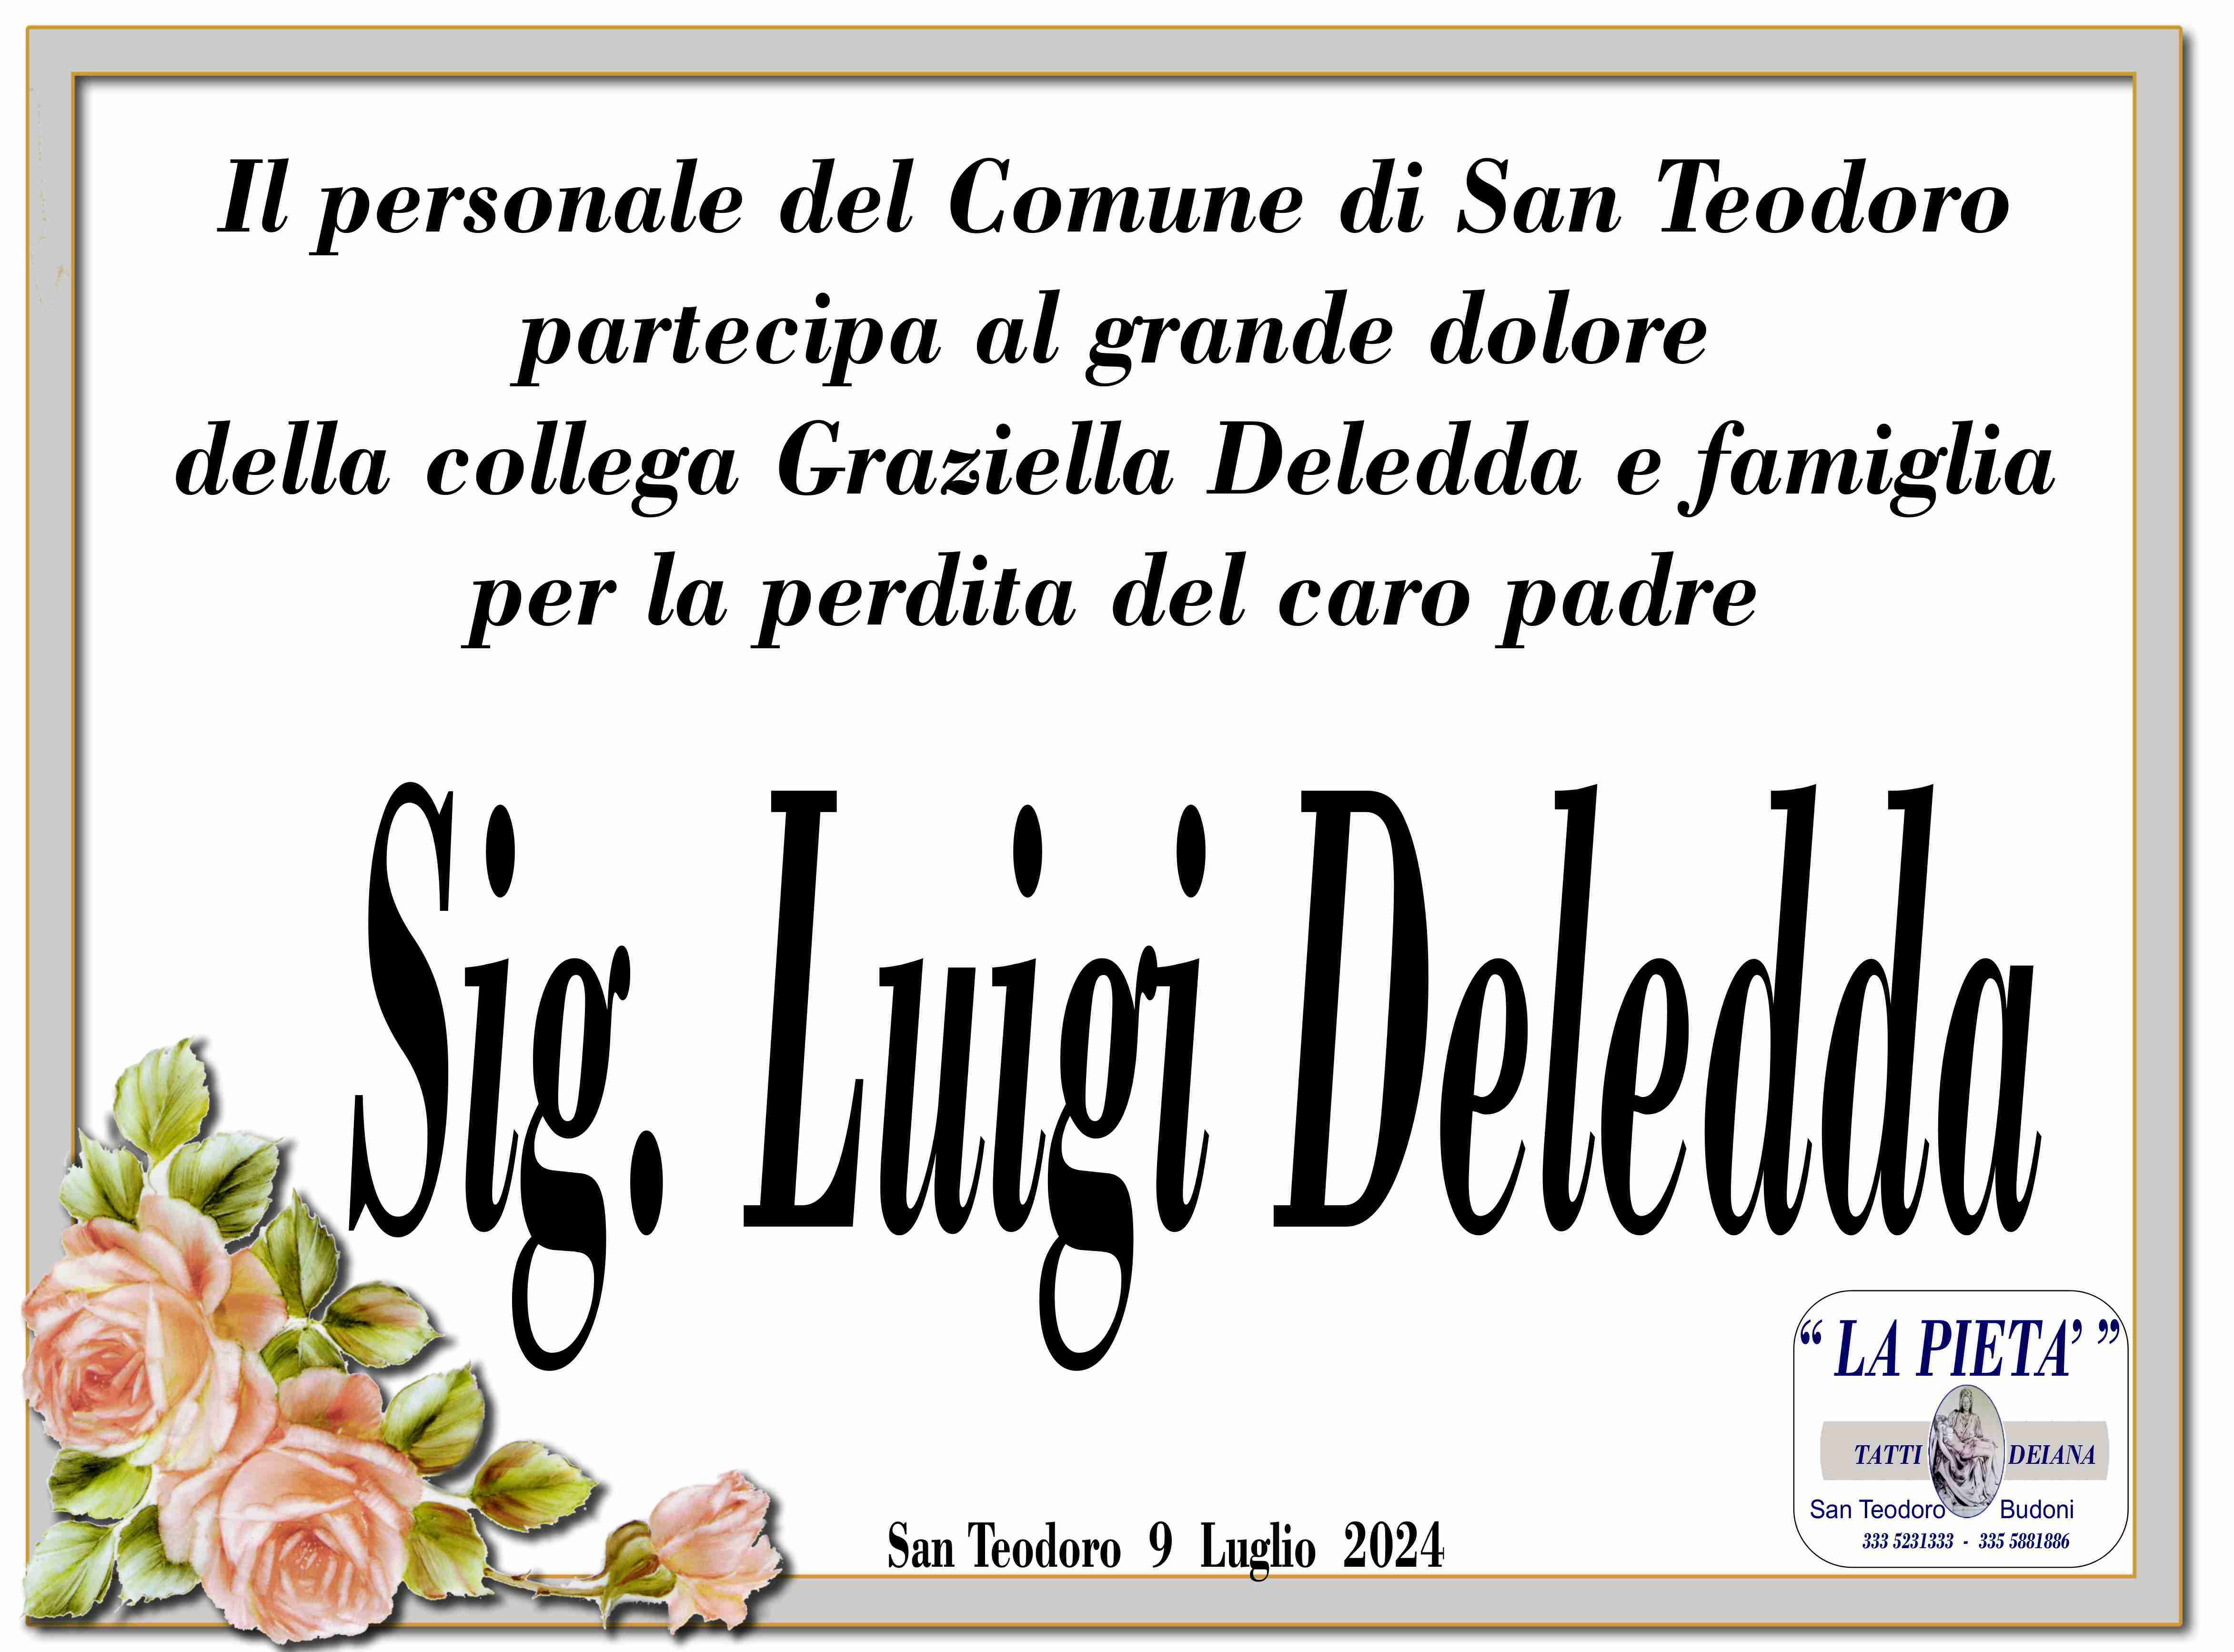 Luigino Deledda